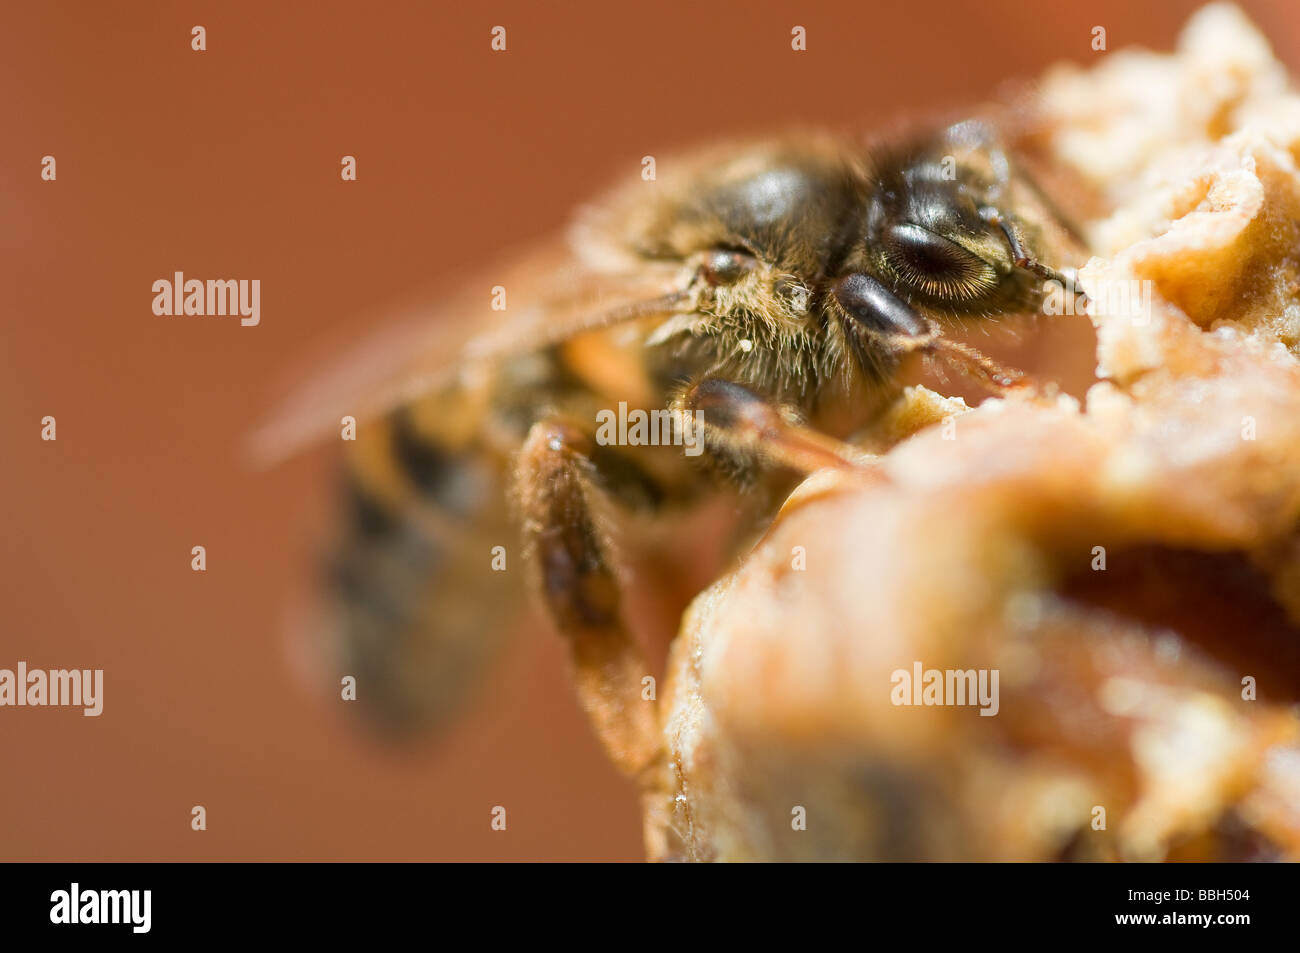 Appena emerse vergine regina miele delle api Foto Stock